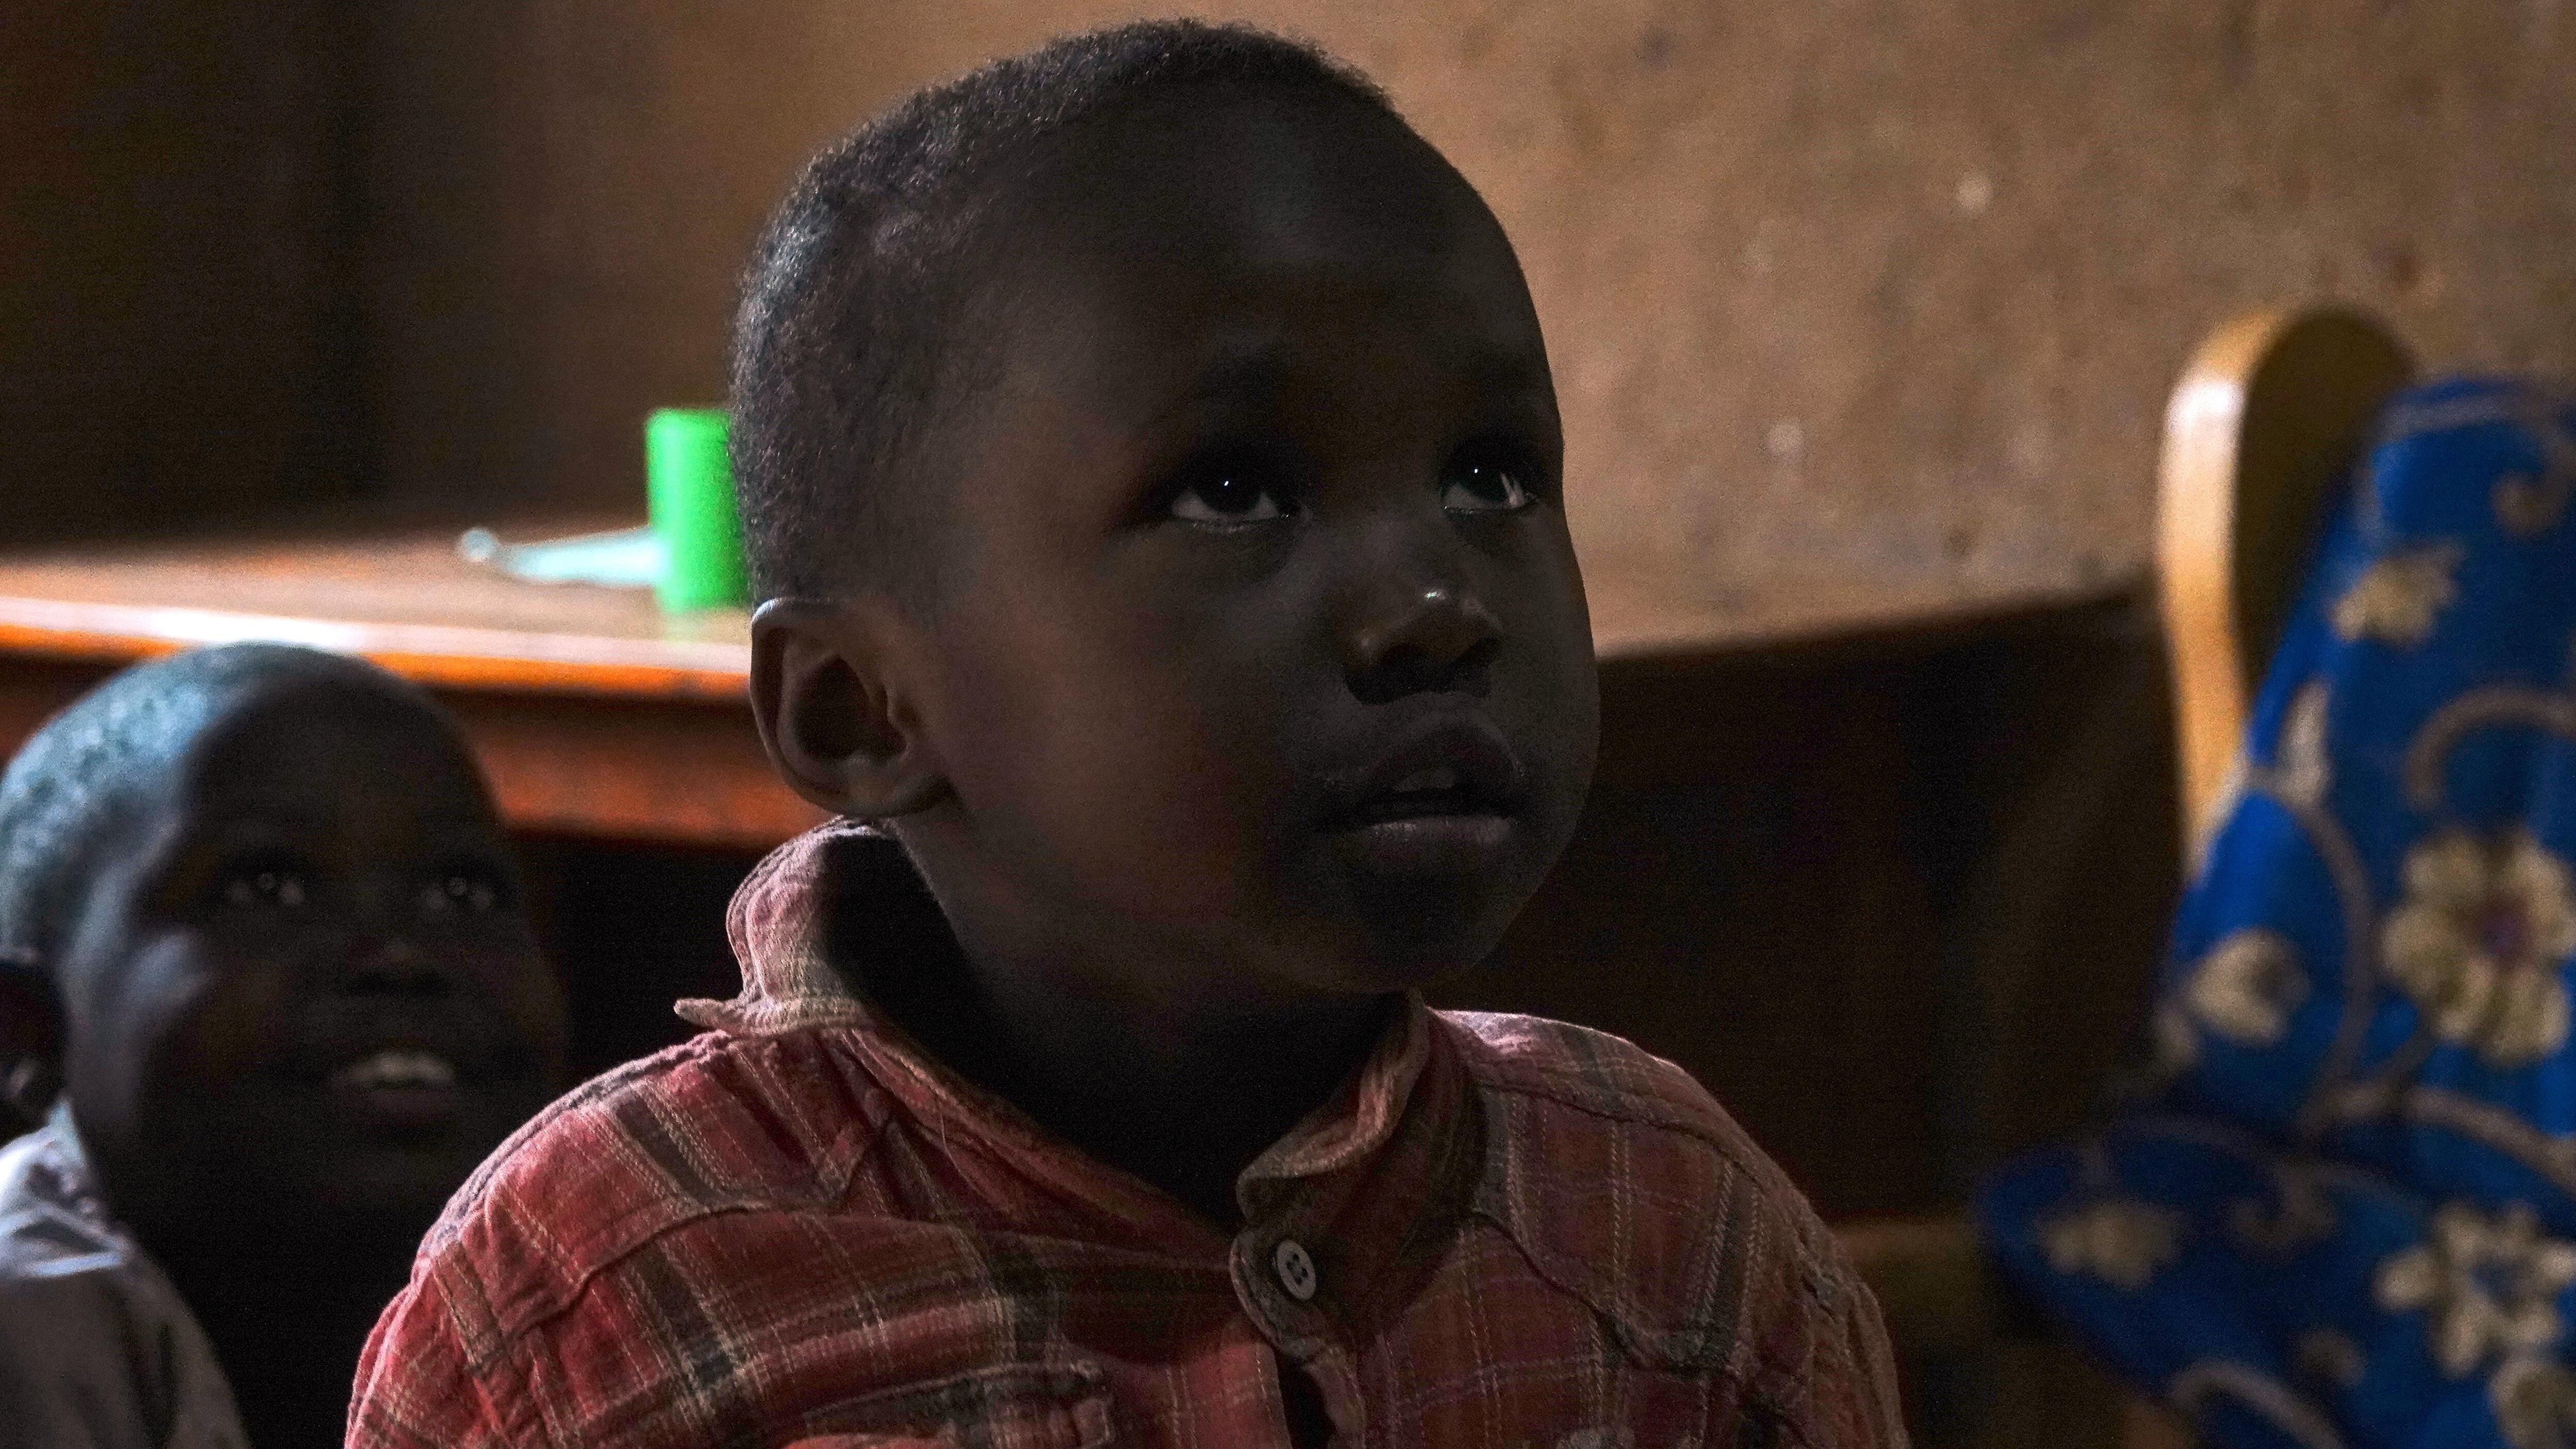 Un enfant rwandais impressionné par la lumière électrique à l'intérieur de sa maison.